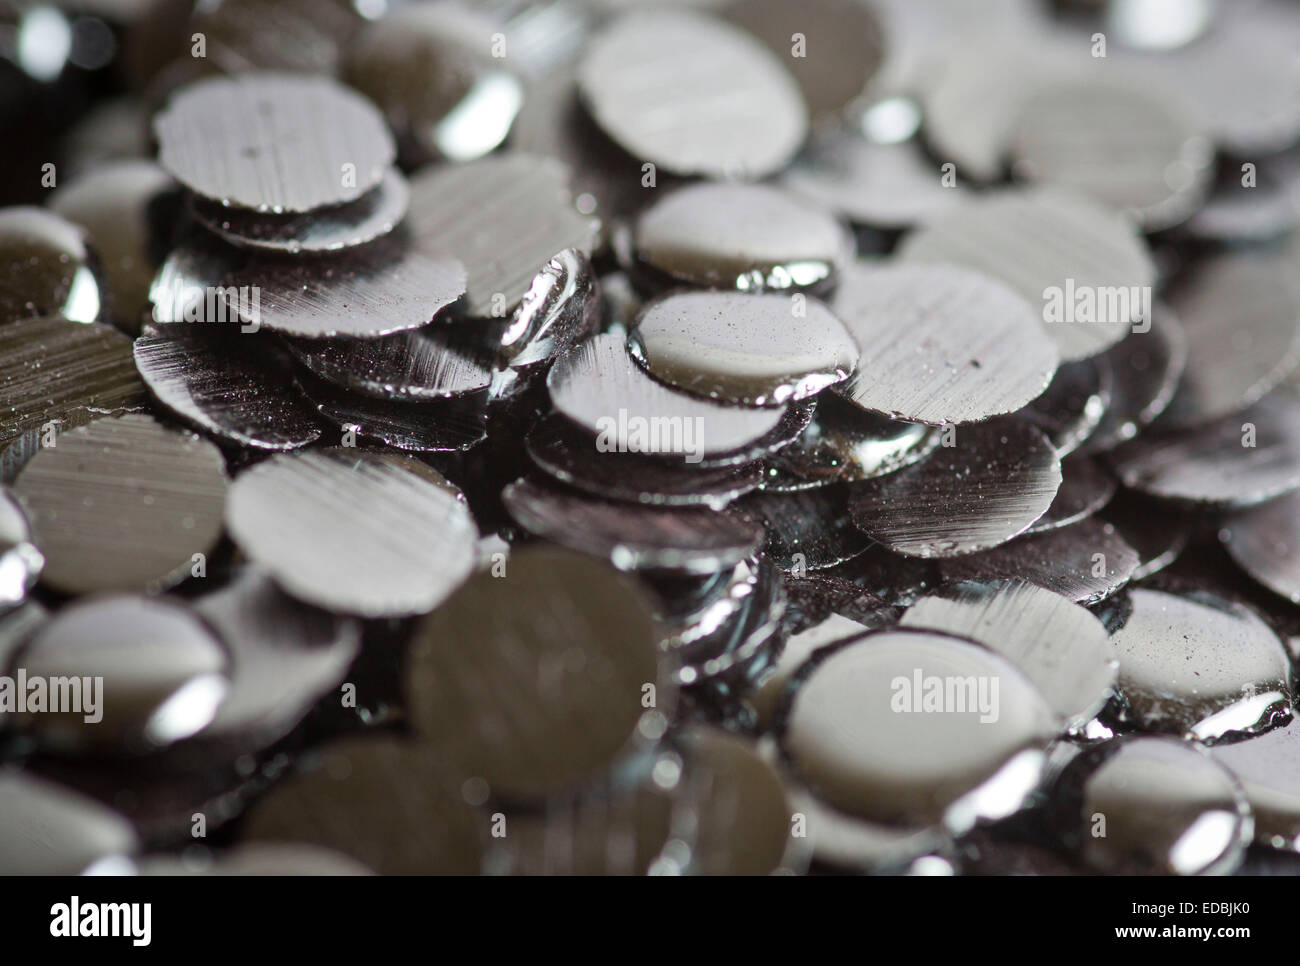 Granulés de sélénium ont mangé à l'Tradium GmbH à Francfort, Allemagne, novembre5, 2012. Tradium est considéré comme l'un des commerçants les plus connues d'Europe dans la technologie des métaux et terres rares. Photo : Frank Rumpenhorst/dpa Banque D'Images